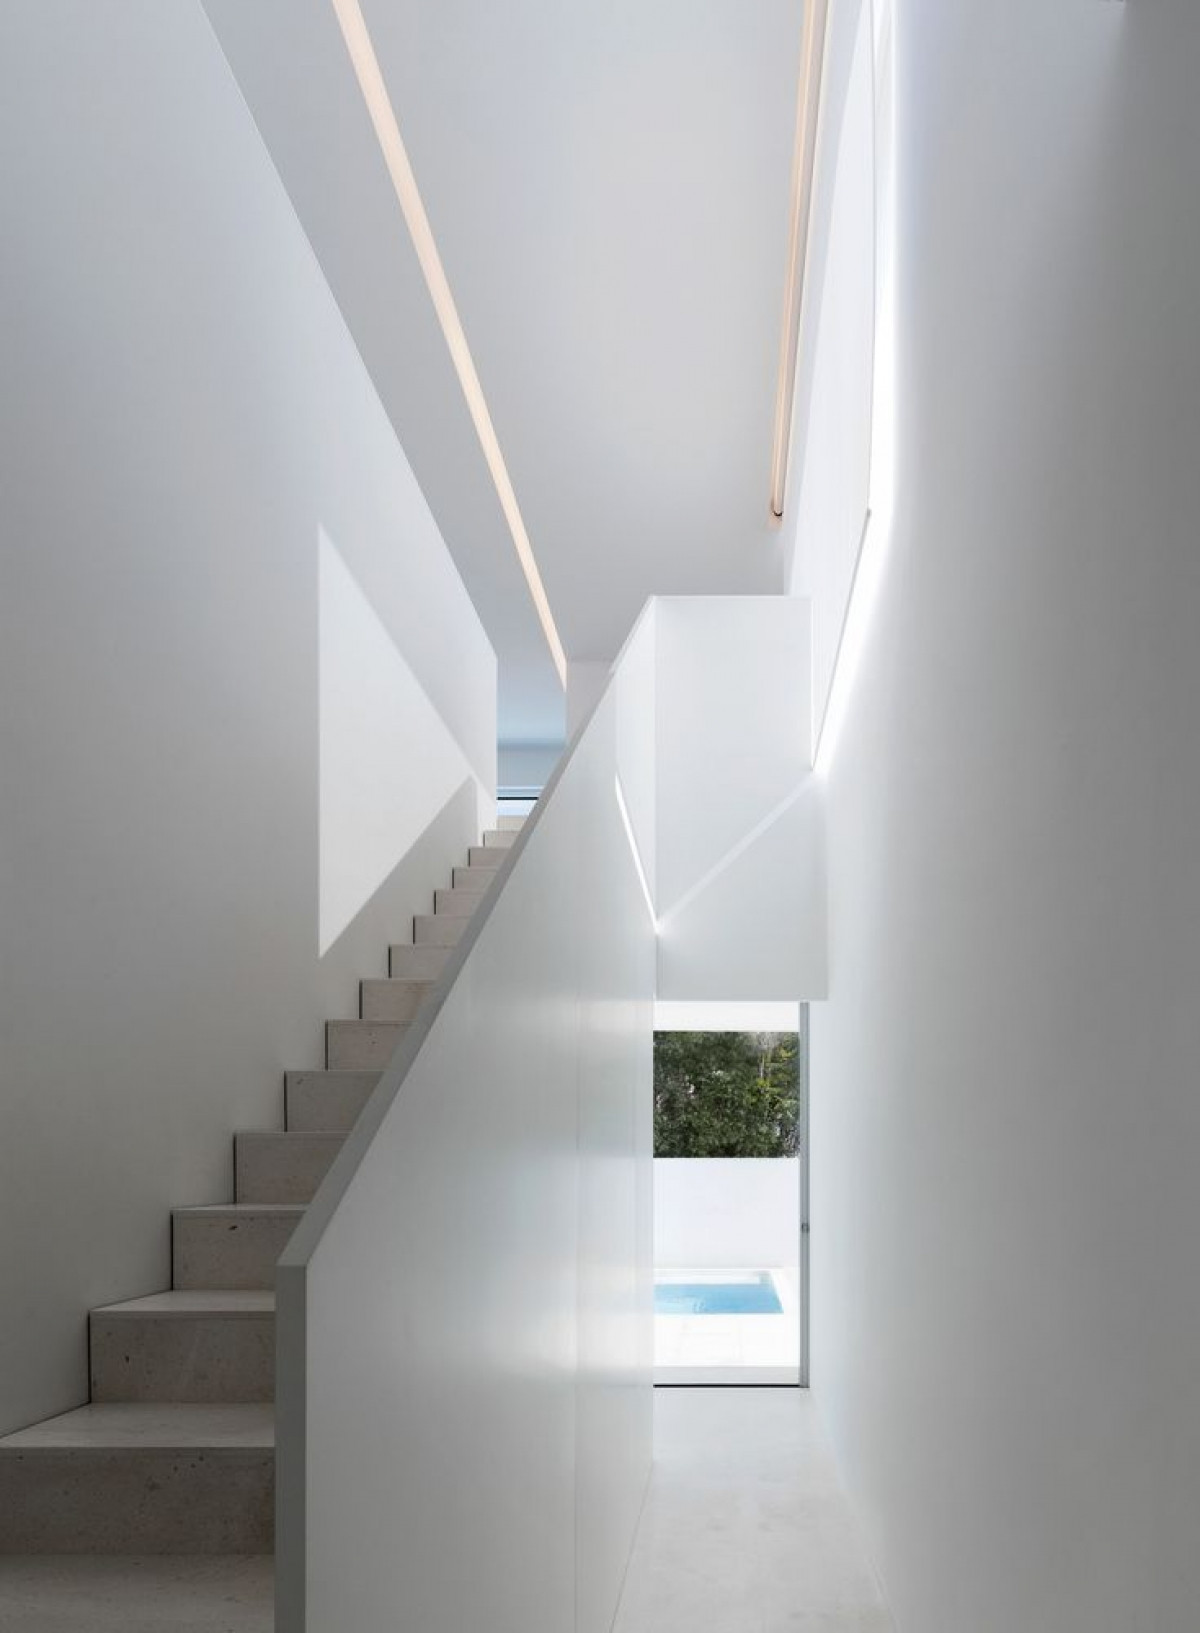 Cầu thang ở góc nhà lên tầng 2 cũng rất đơn giản. Ánh sáng là một loại “vật liệu” làm nổi bất những hình khối kiến trúc.